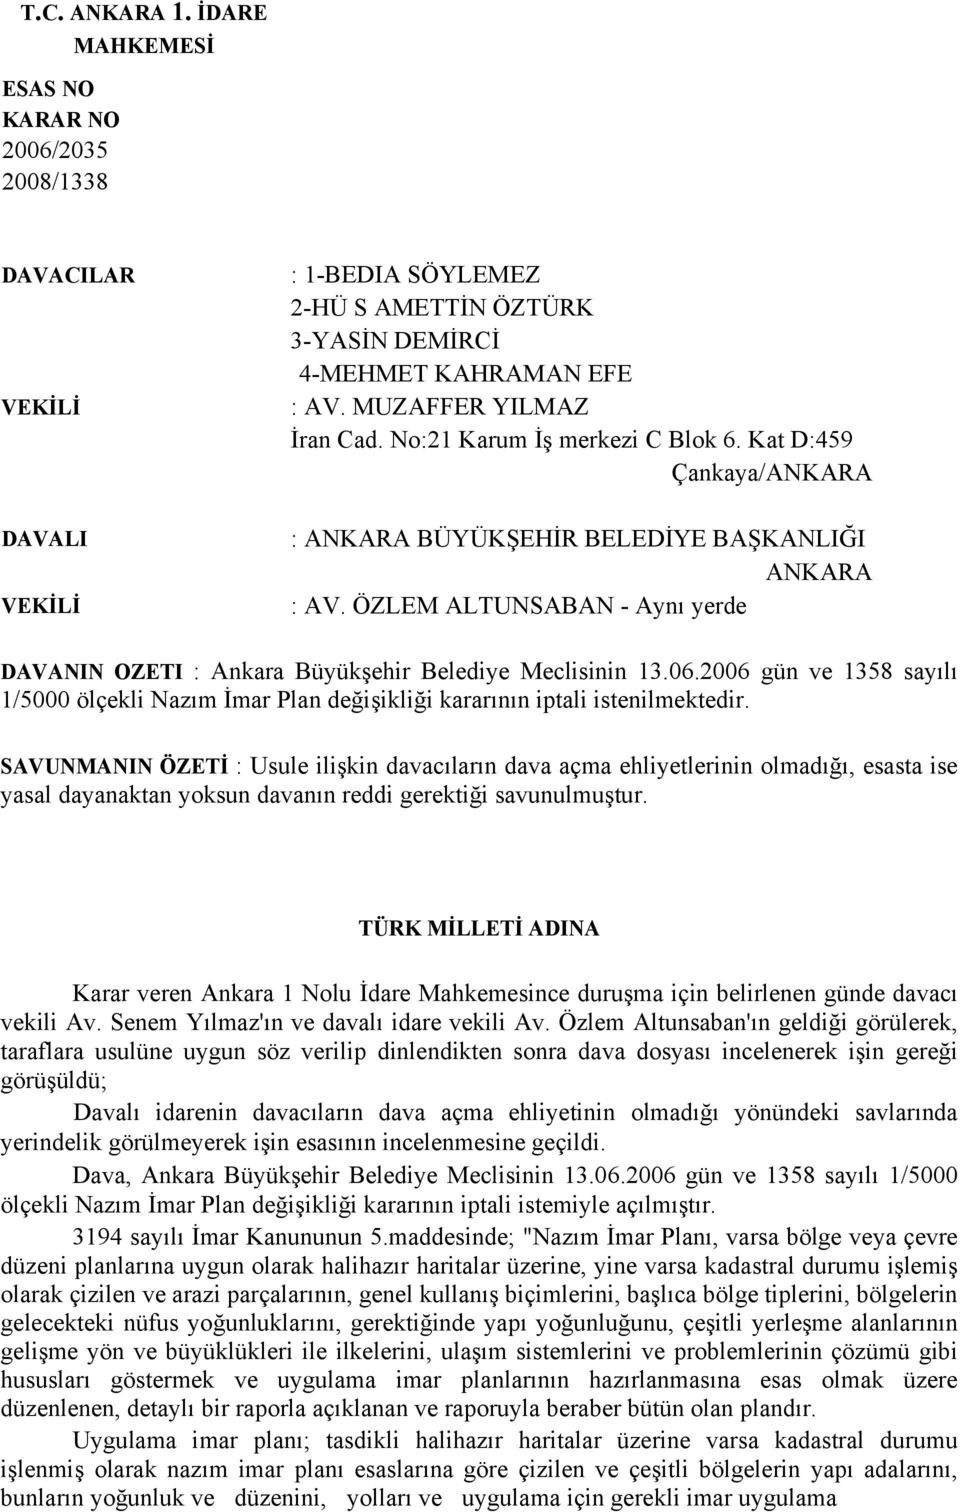 ÖZLEM ALTUNSABAN - Aynı yerde DAVANIN OZETI : Ankara Büyükşehir Belediye Meclisinin 13.06.2006 gün ve 1358 sayılı 1/5000 ölçekli Nazım İmar Plan değişikliği kararının iptali istenilmektedir.